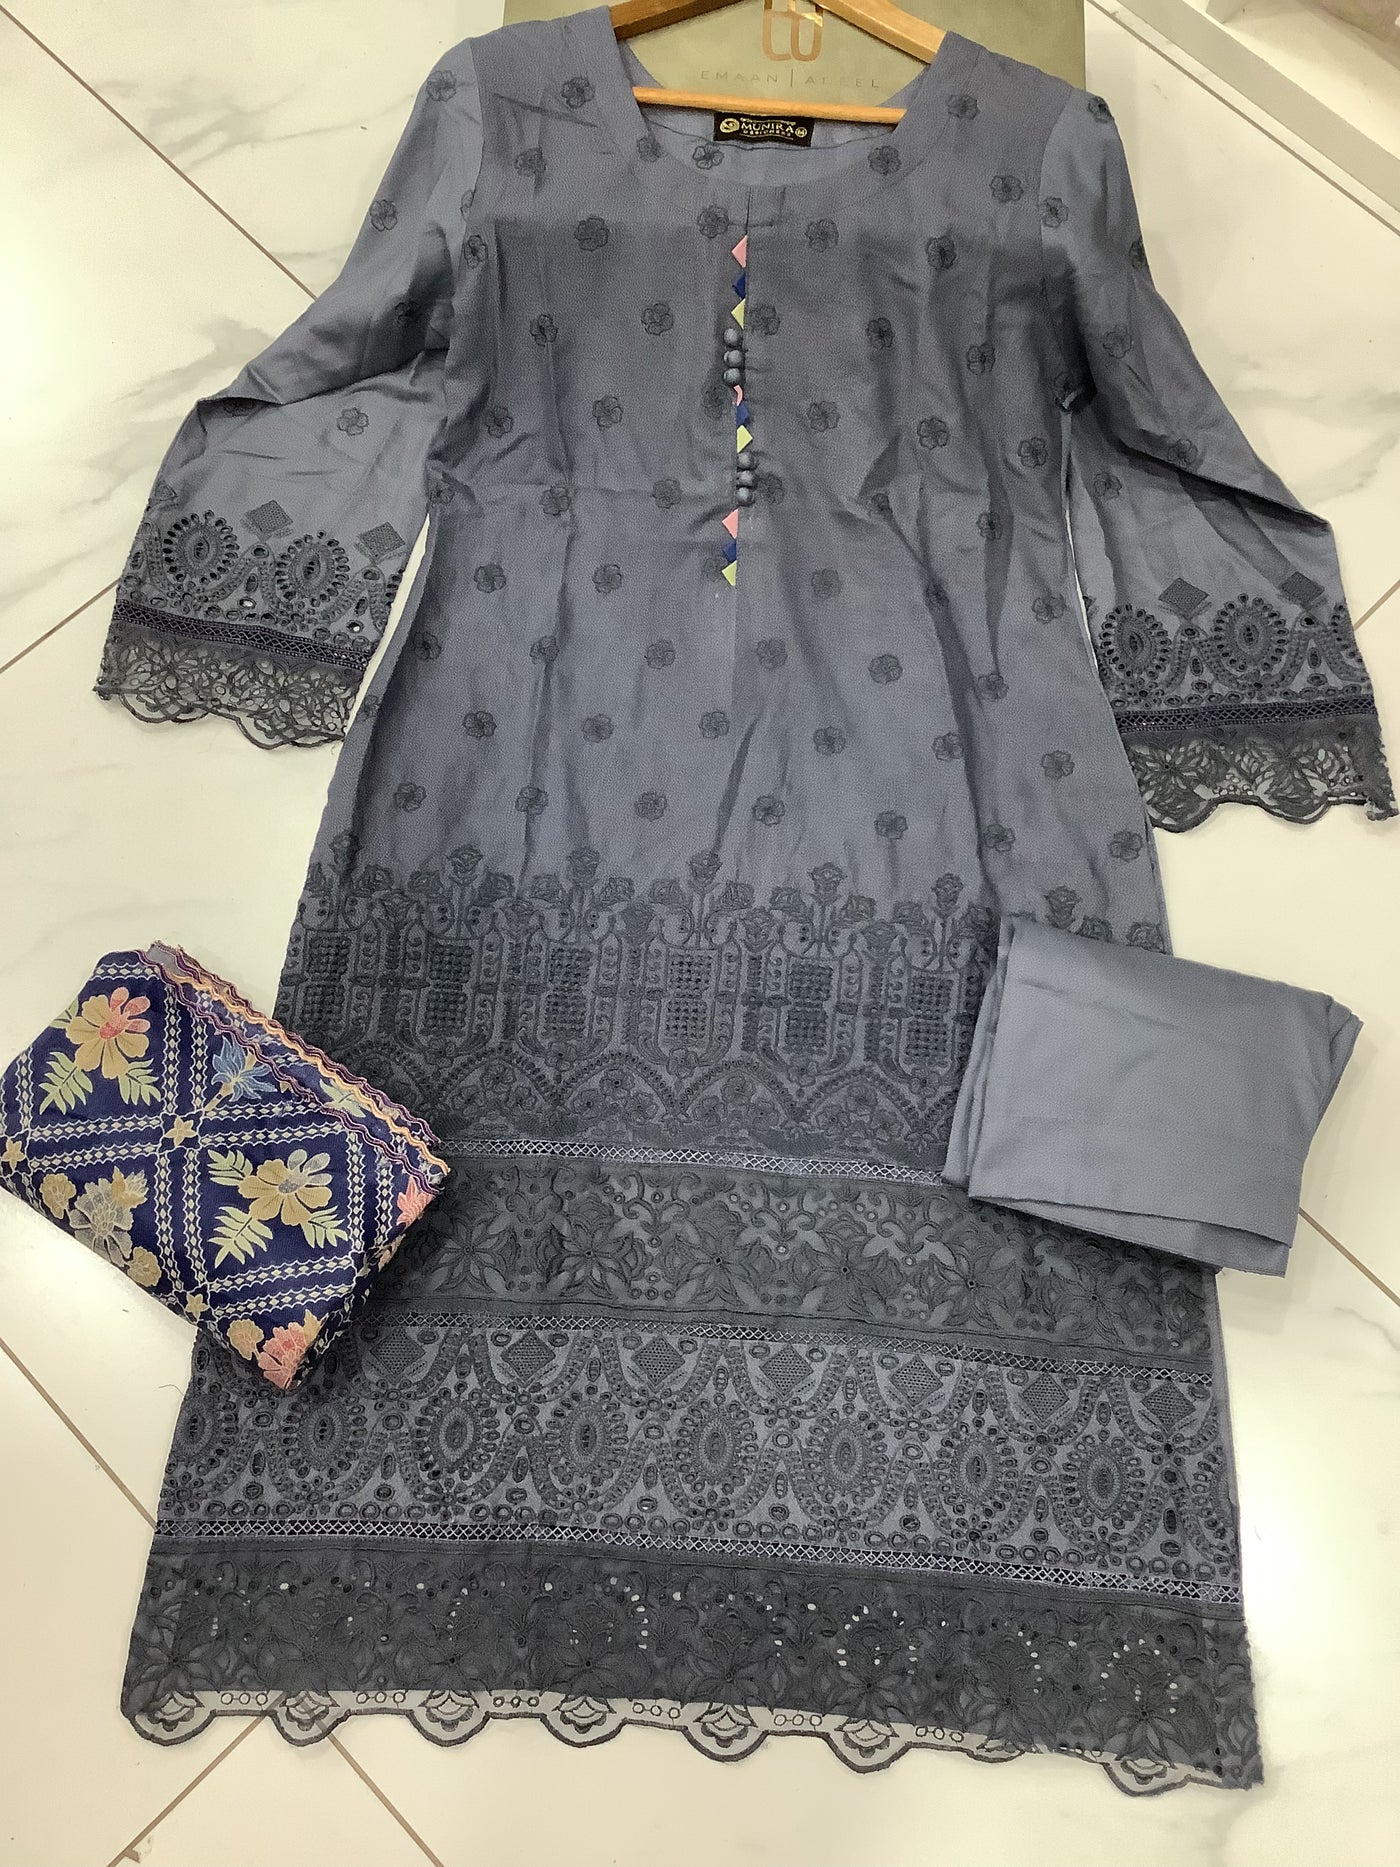  Munira - Pakistani clothes